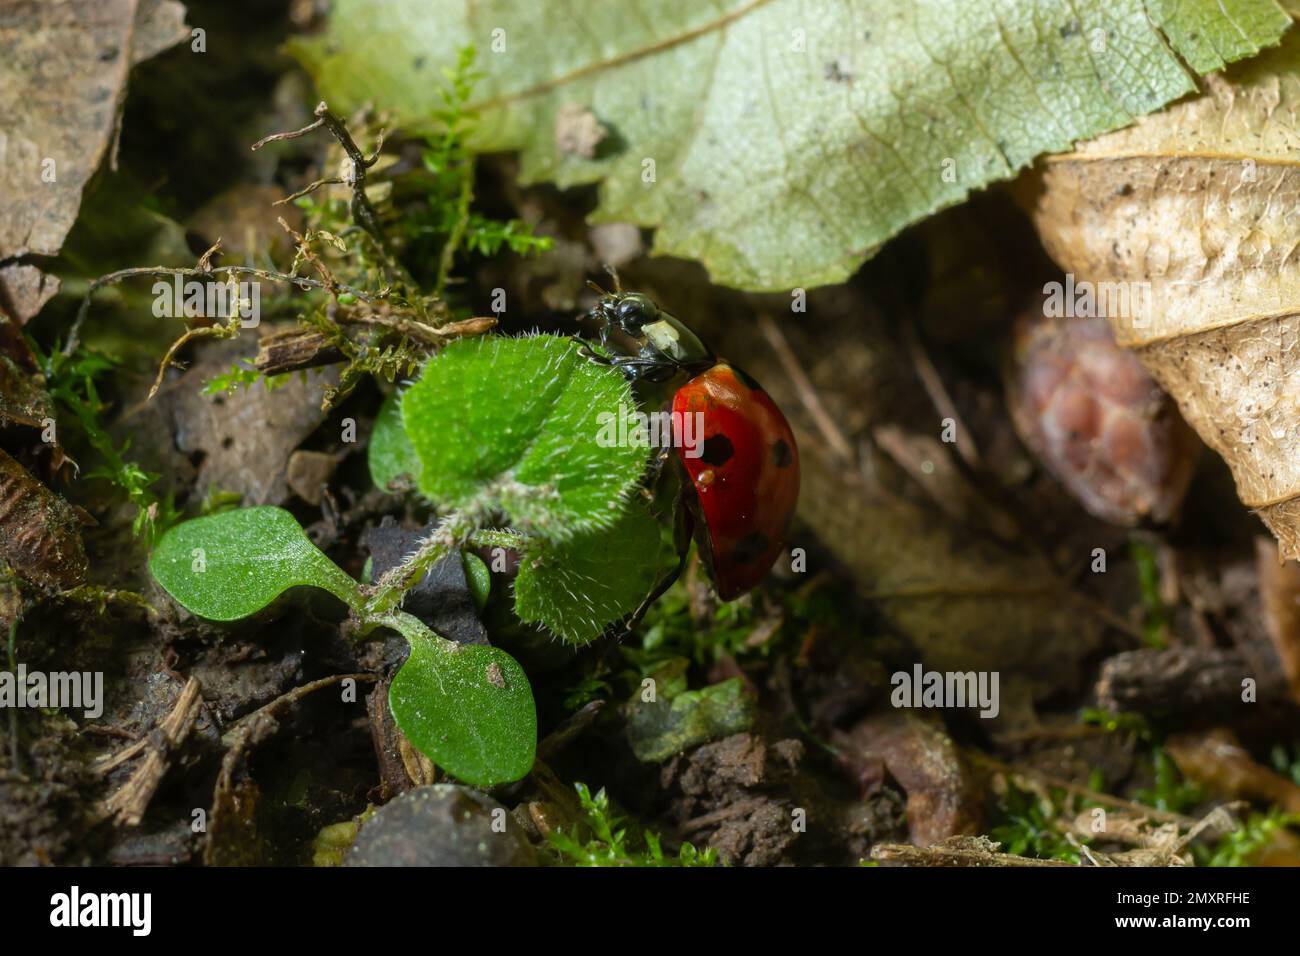 Coccinelle à sept taches, Coccinella septempunctata, Coleoptera Coccinellidae sur une feuille verte dans la forêt de près. Banque D'Images